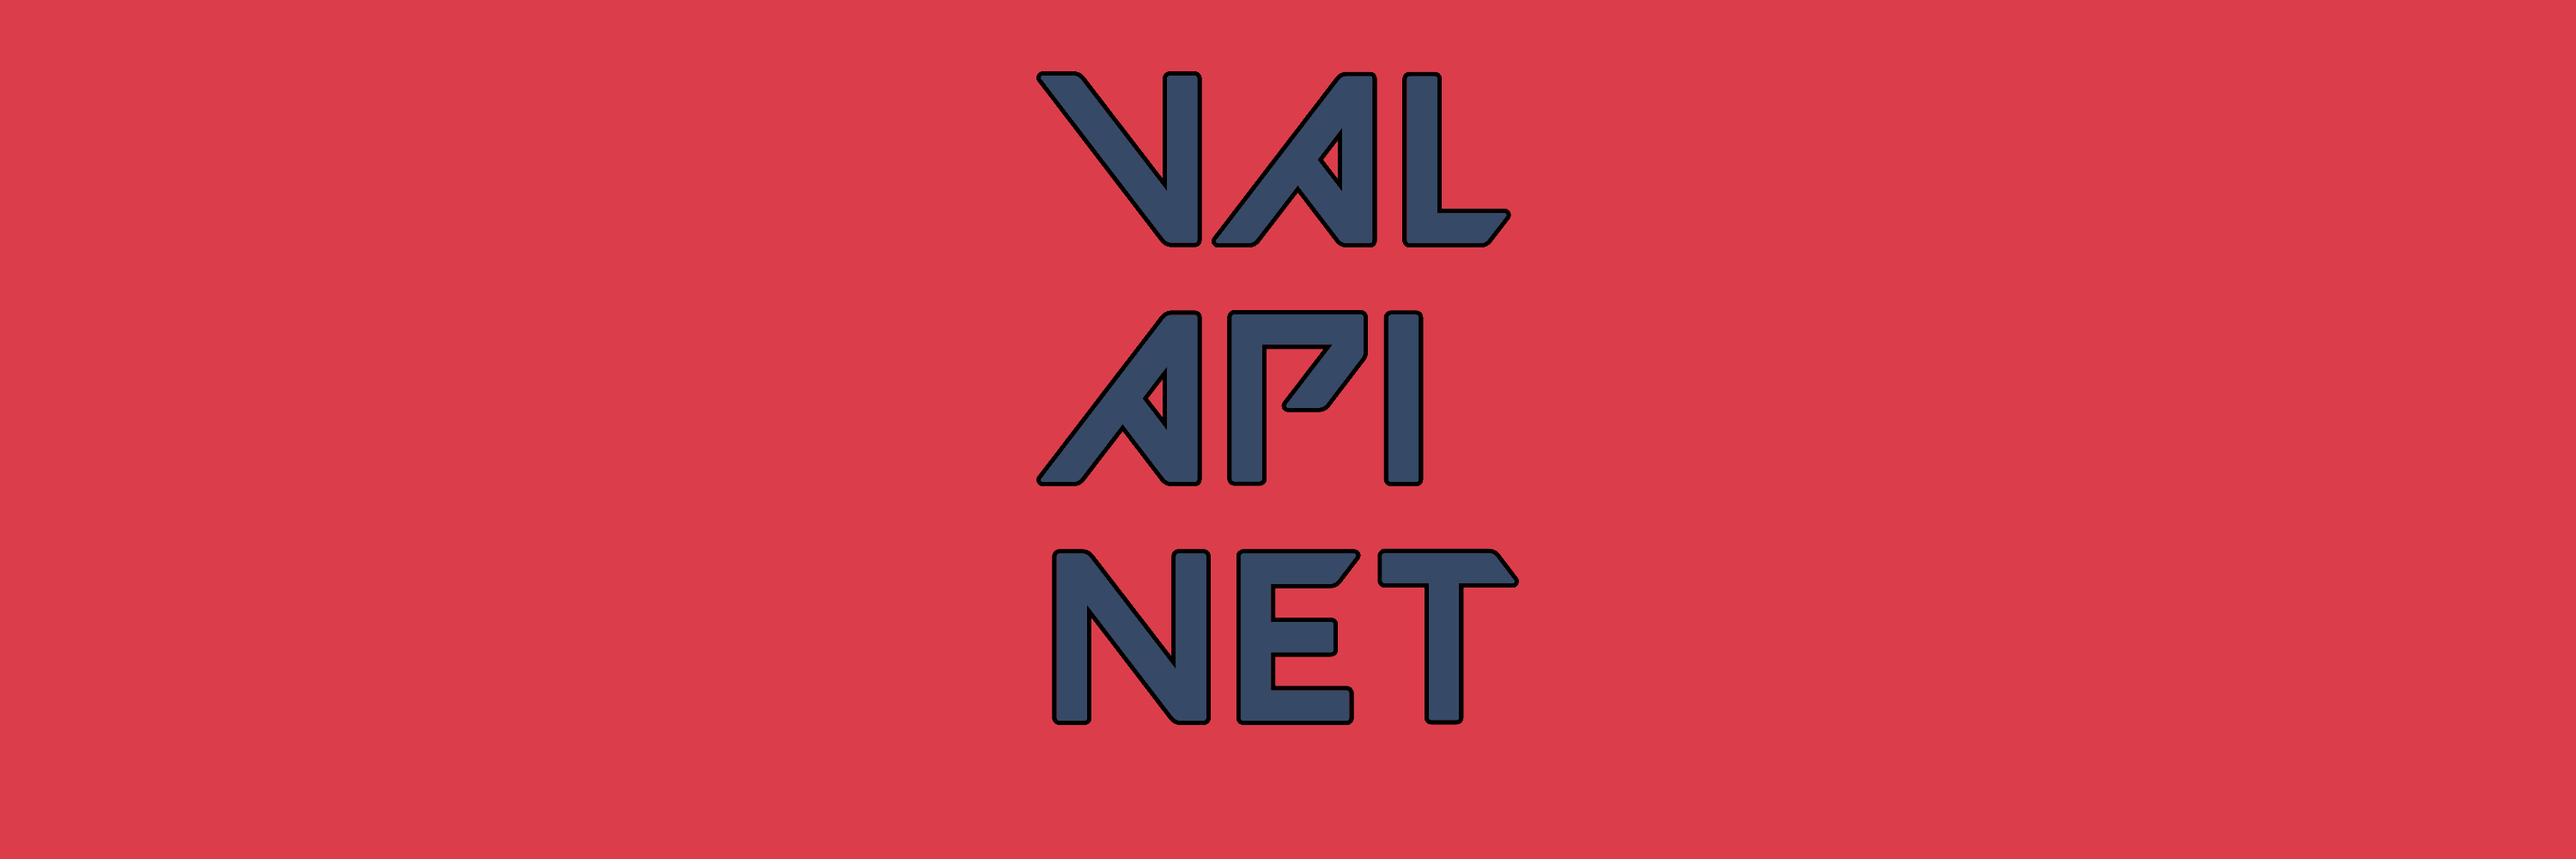 # ValAPI.Net